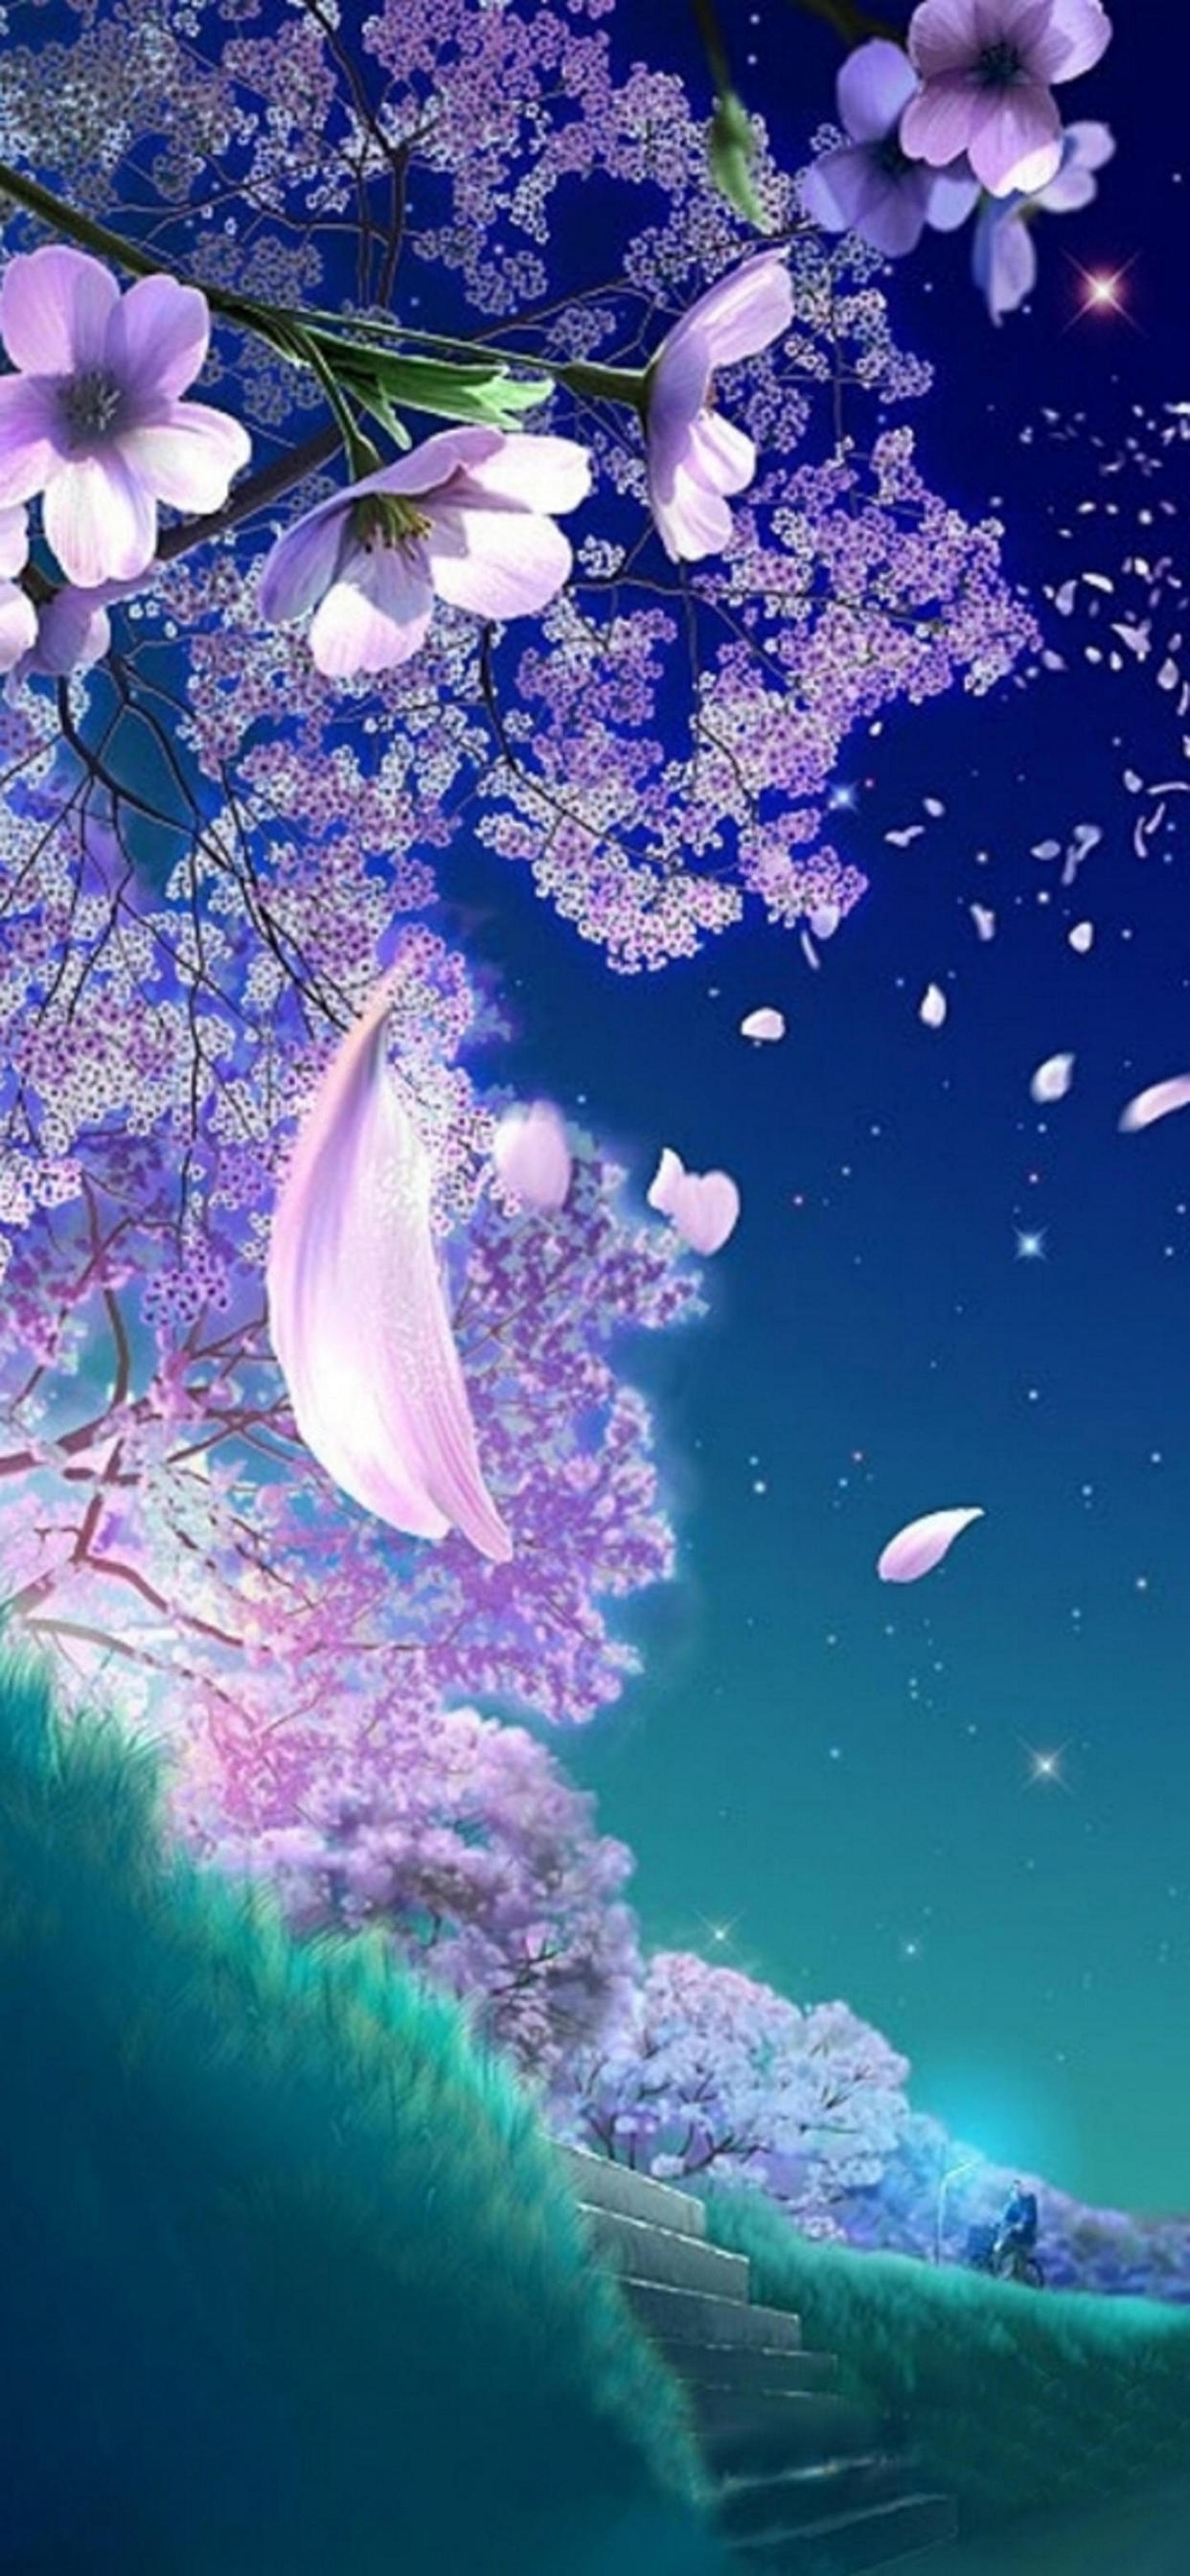 舞い散る桜の花びらのイラスト Iphone 12 Pro Max スマホ壁紙 待ち受け スマラン